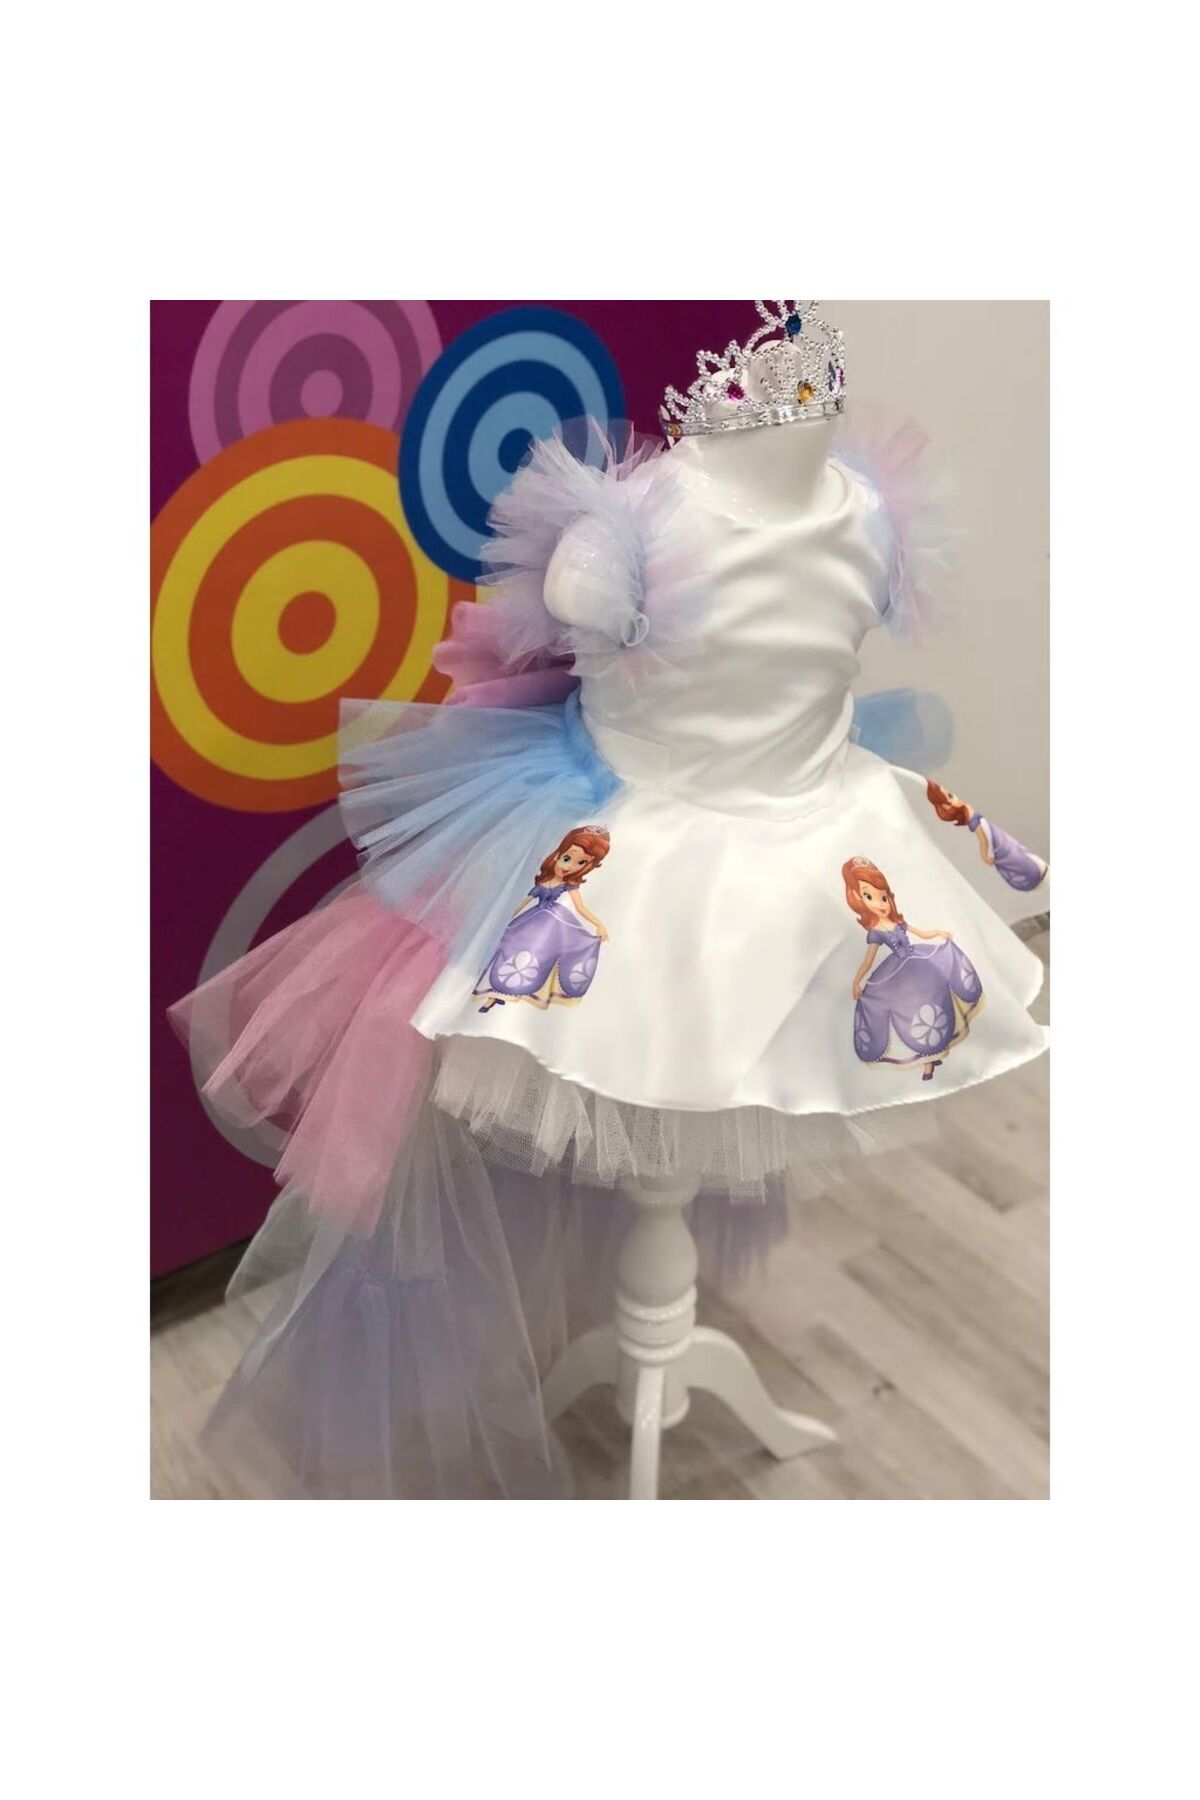 YAĞMUR KOStütüM Prenses Sofia Baskılı Kız Çocuk Doğumgünü Elbisesi Parti Kostümü